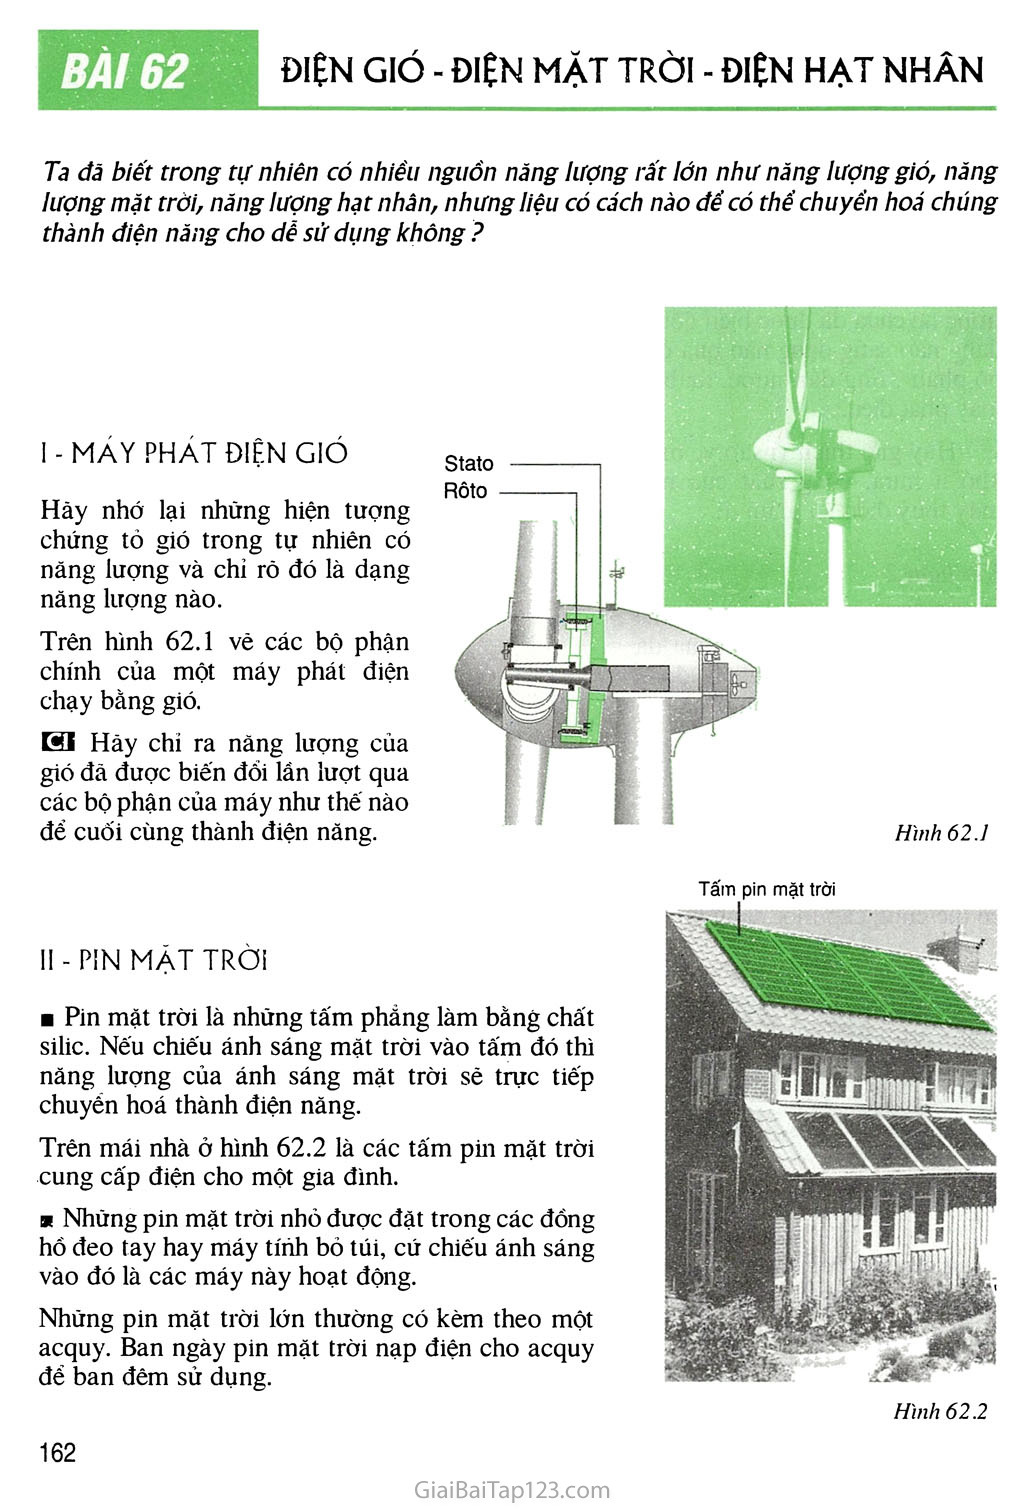 Bài 62 Điện gió - Điện mặt trời - Điện hạt nhân trang 1